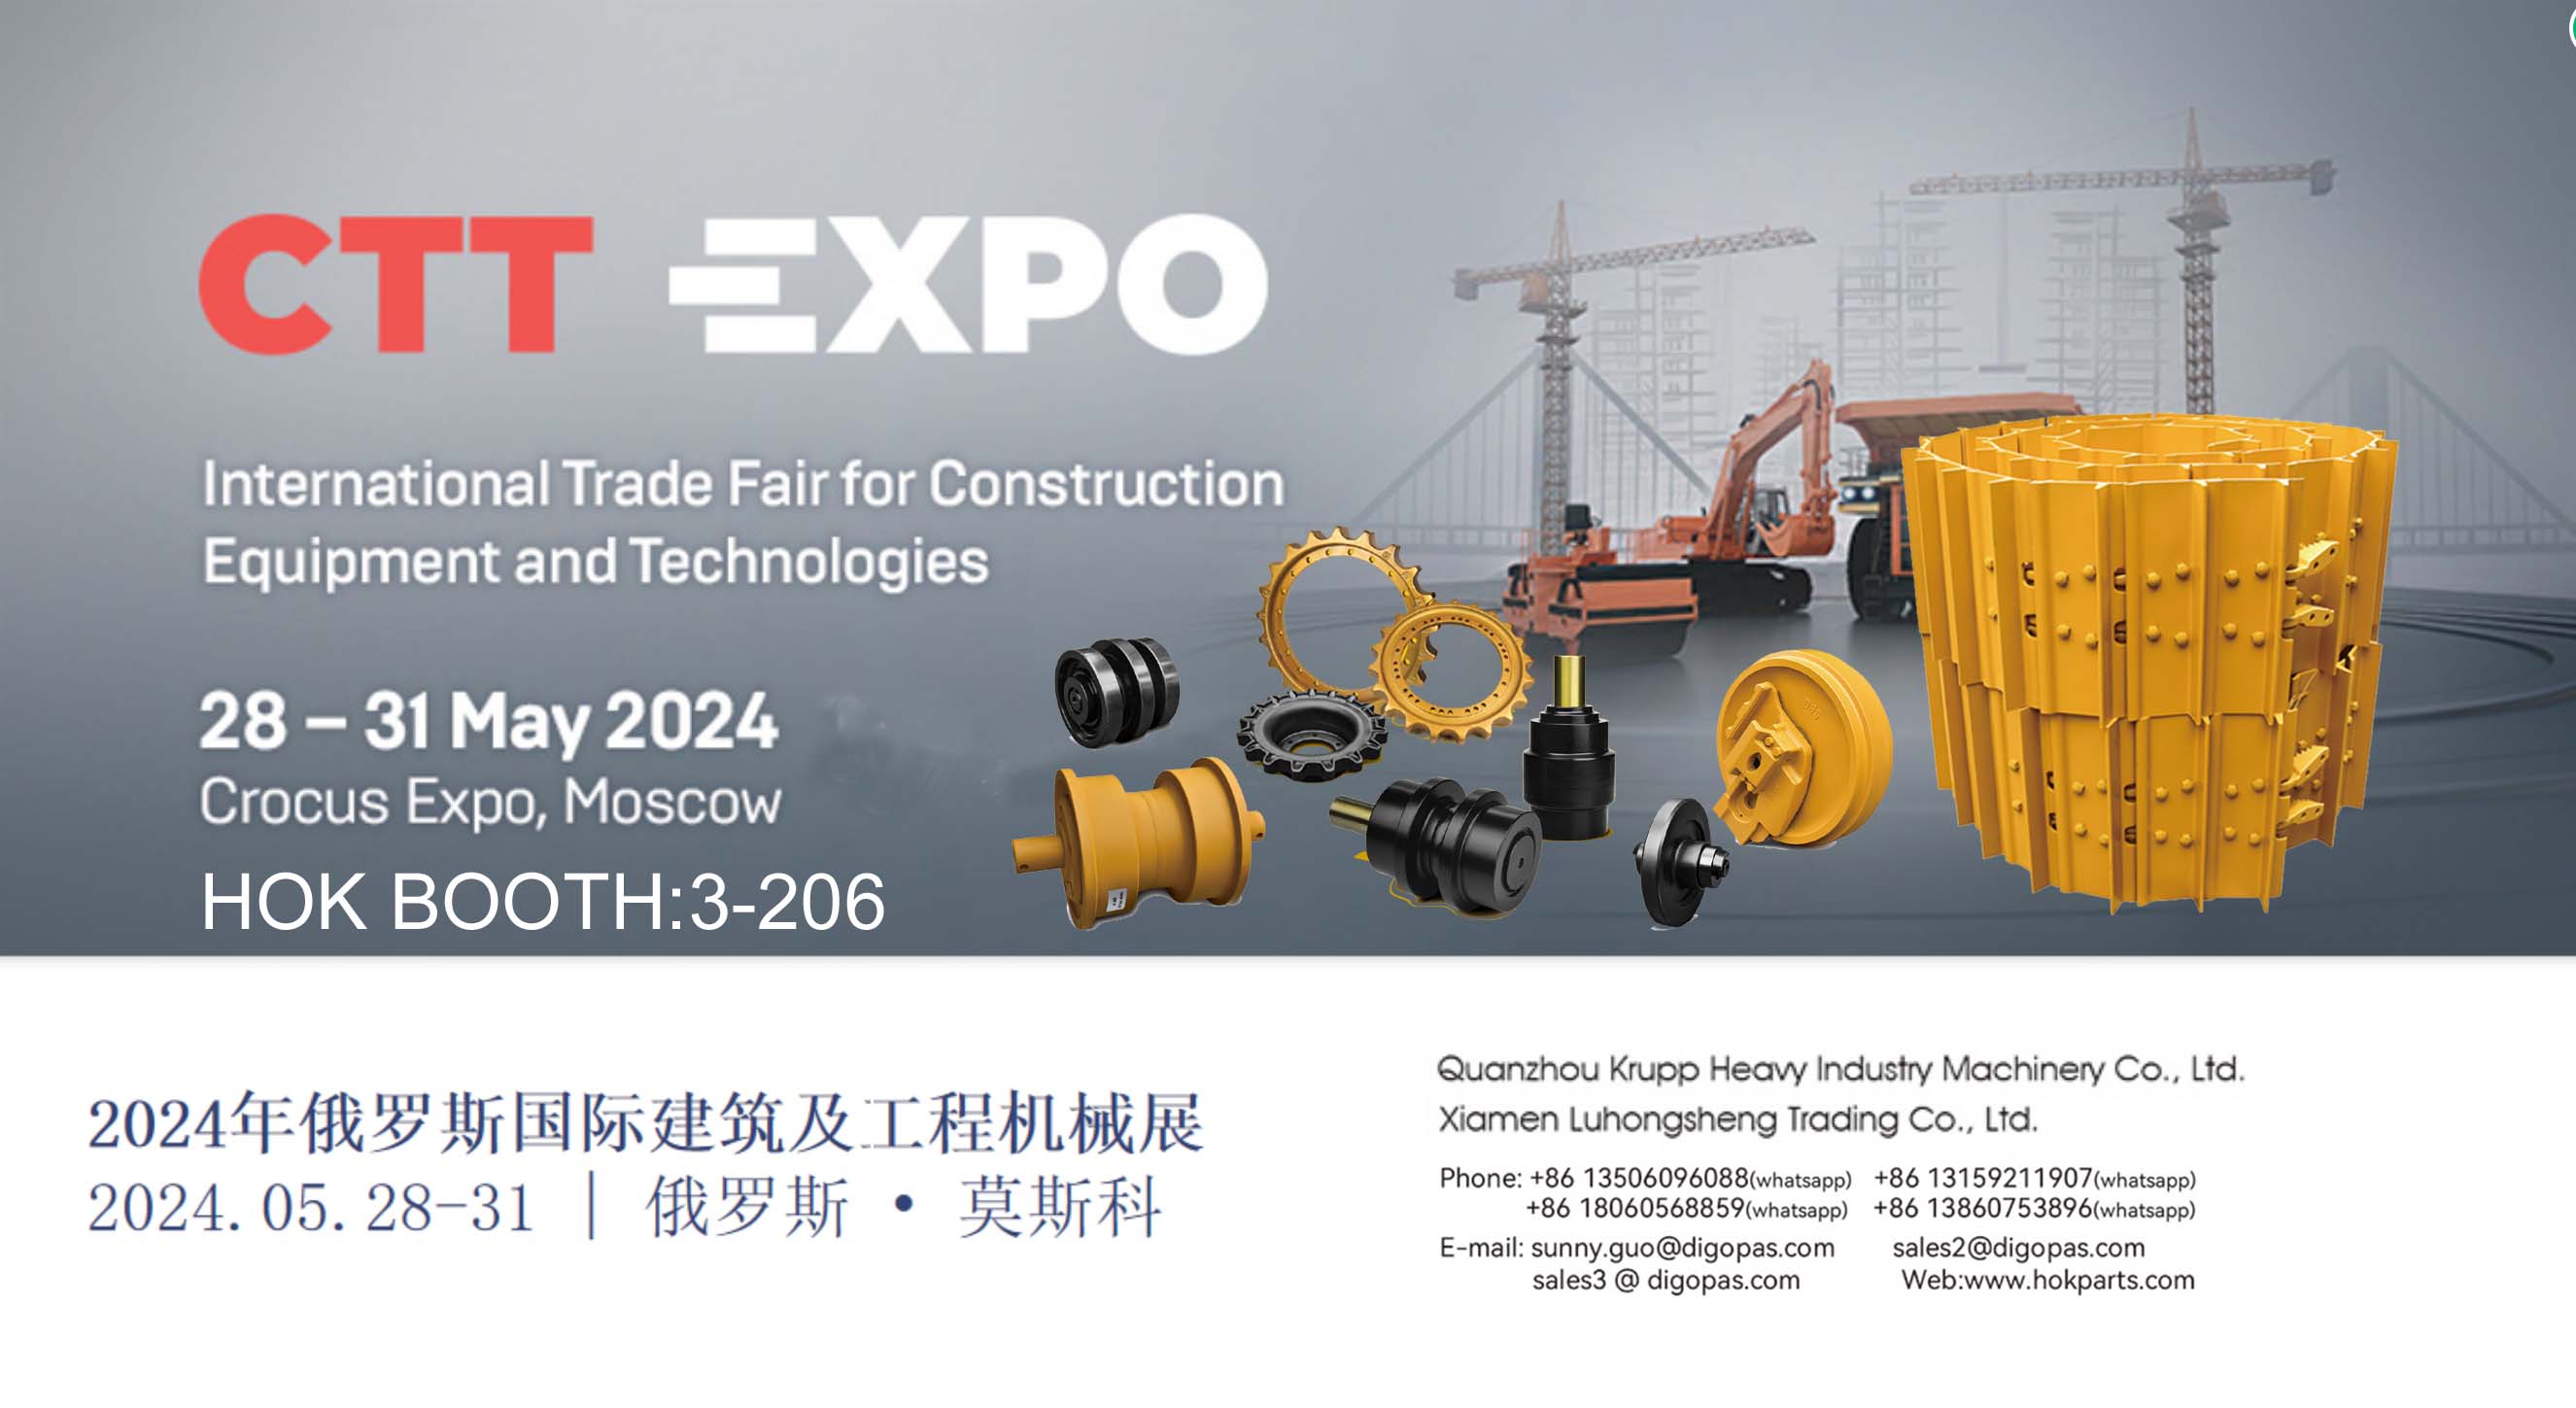 CTT EXPO 28-31 de maig de 2024 Reunió a la Fira Internacional d'Equips i Tecnologies de la Construcció